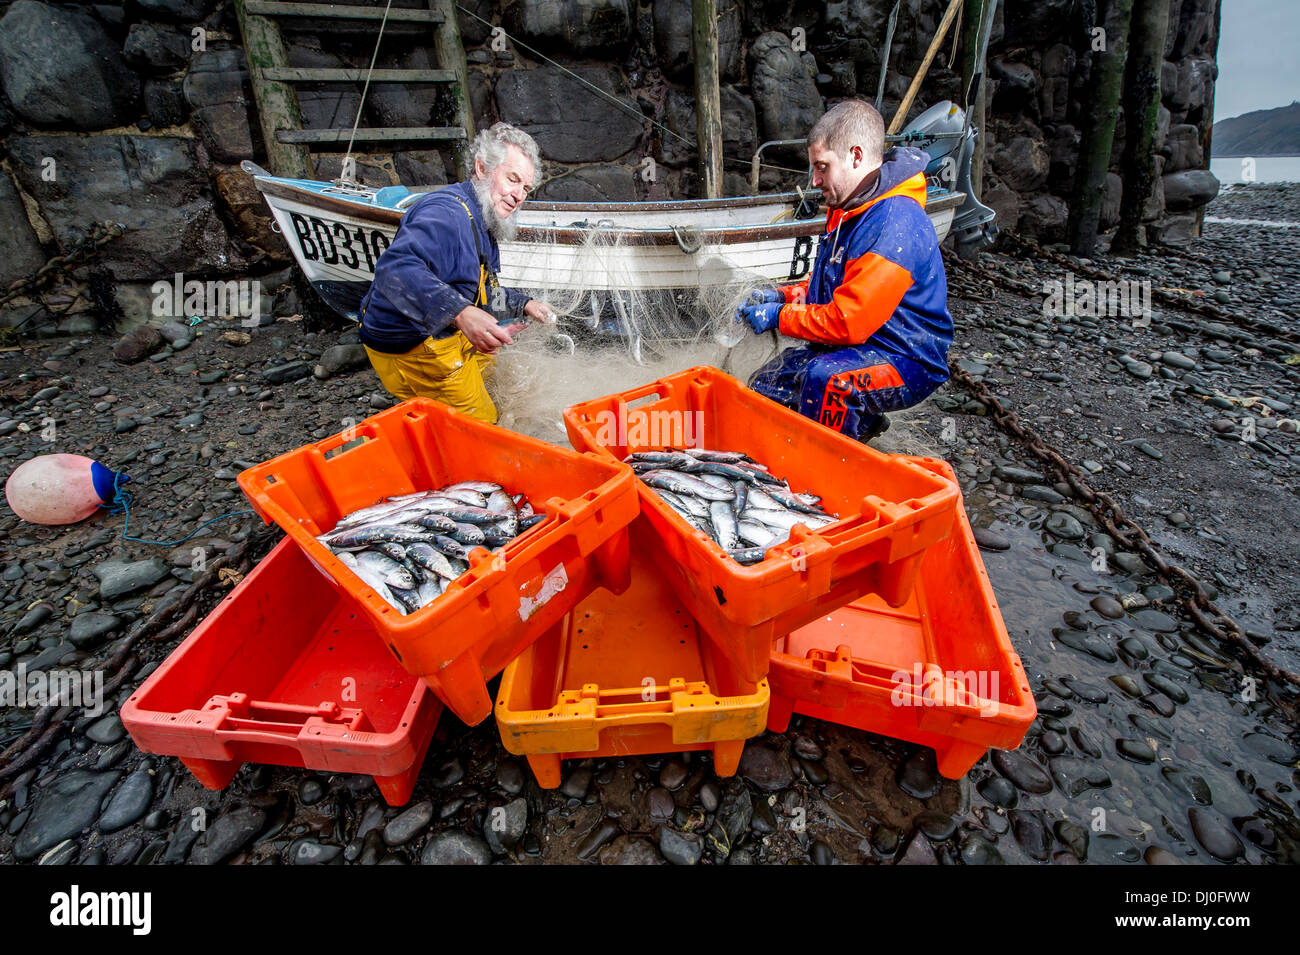 Los pescadores Chris Braund (izquierda) y Jordania Ross sus redes de descarga de pescado en el anual Festival de arenque Clovelly Devon, Reino Unido Foto de stock